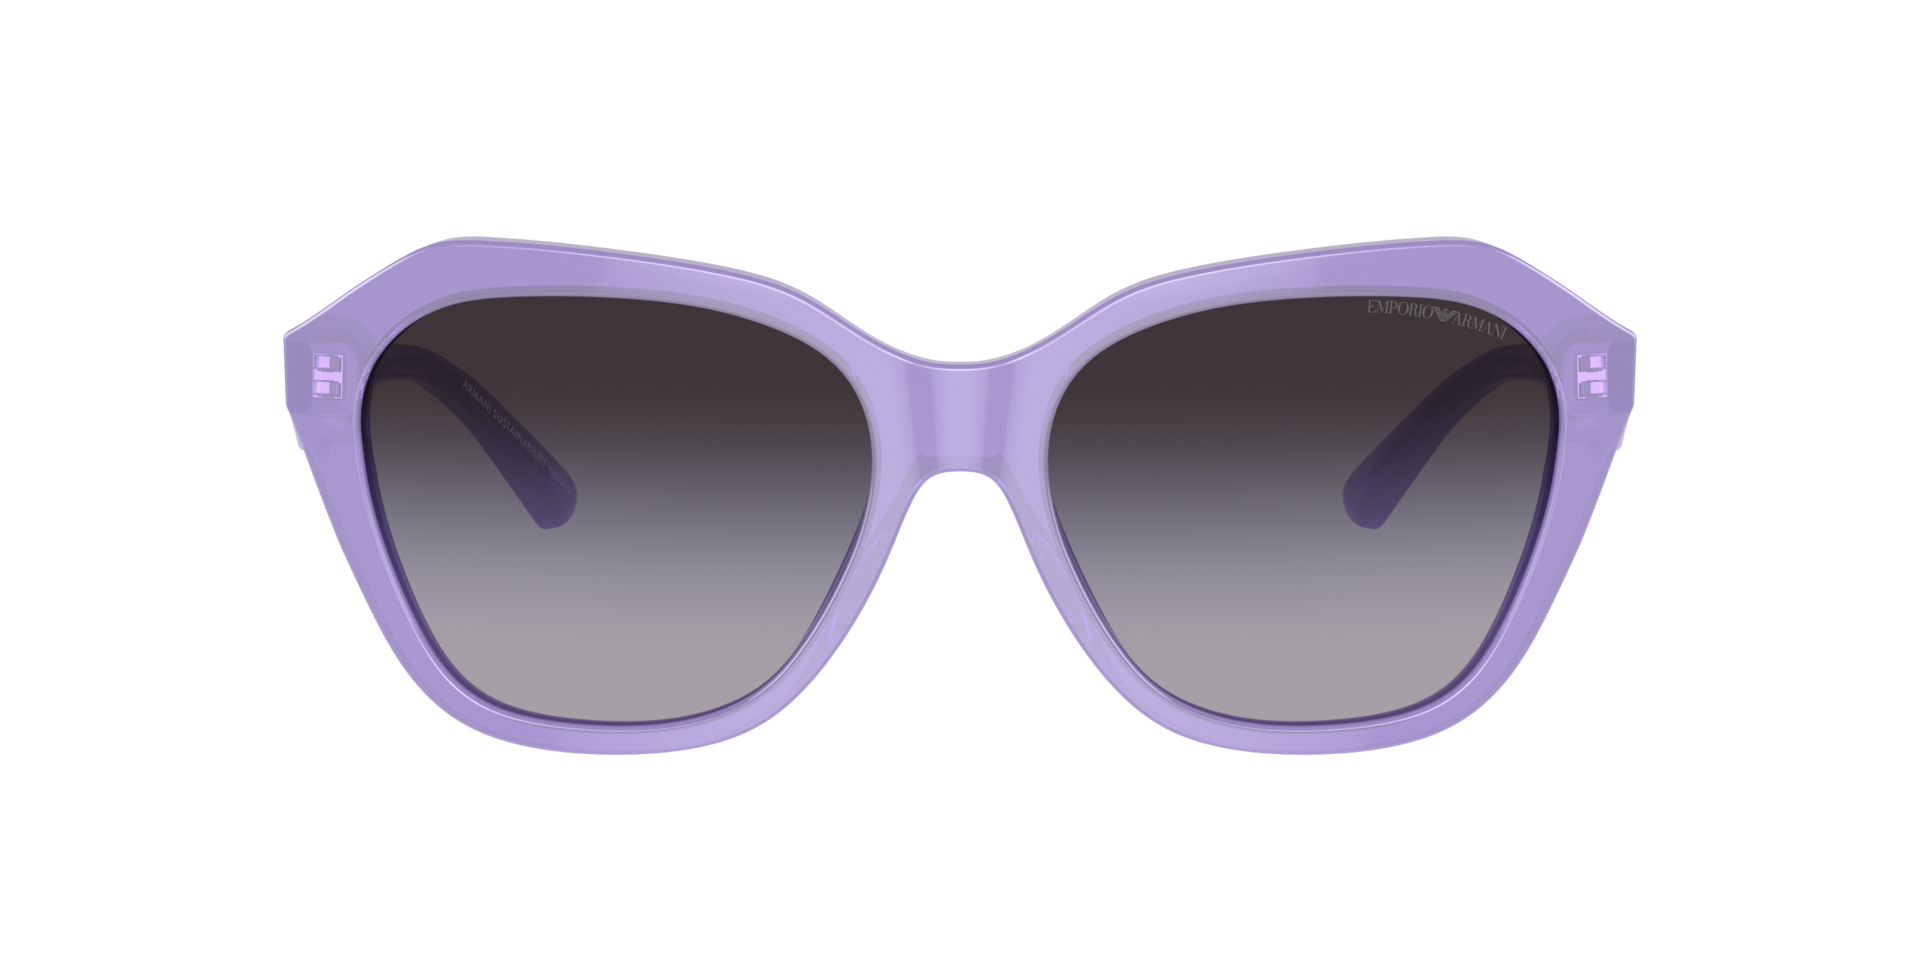 Das Bild zeigt die Sonnenbrille EA4221 61178G von der Marke Emporio Armani in flieder.